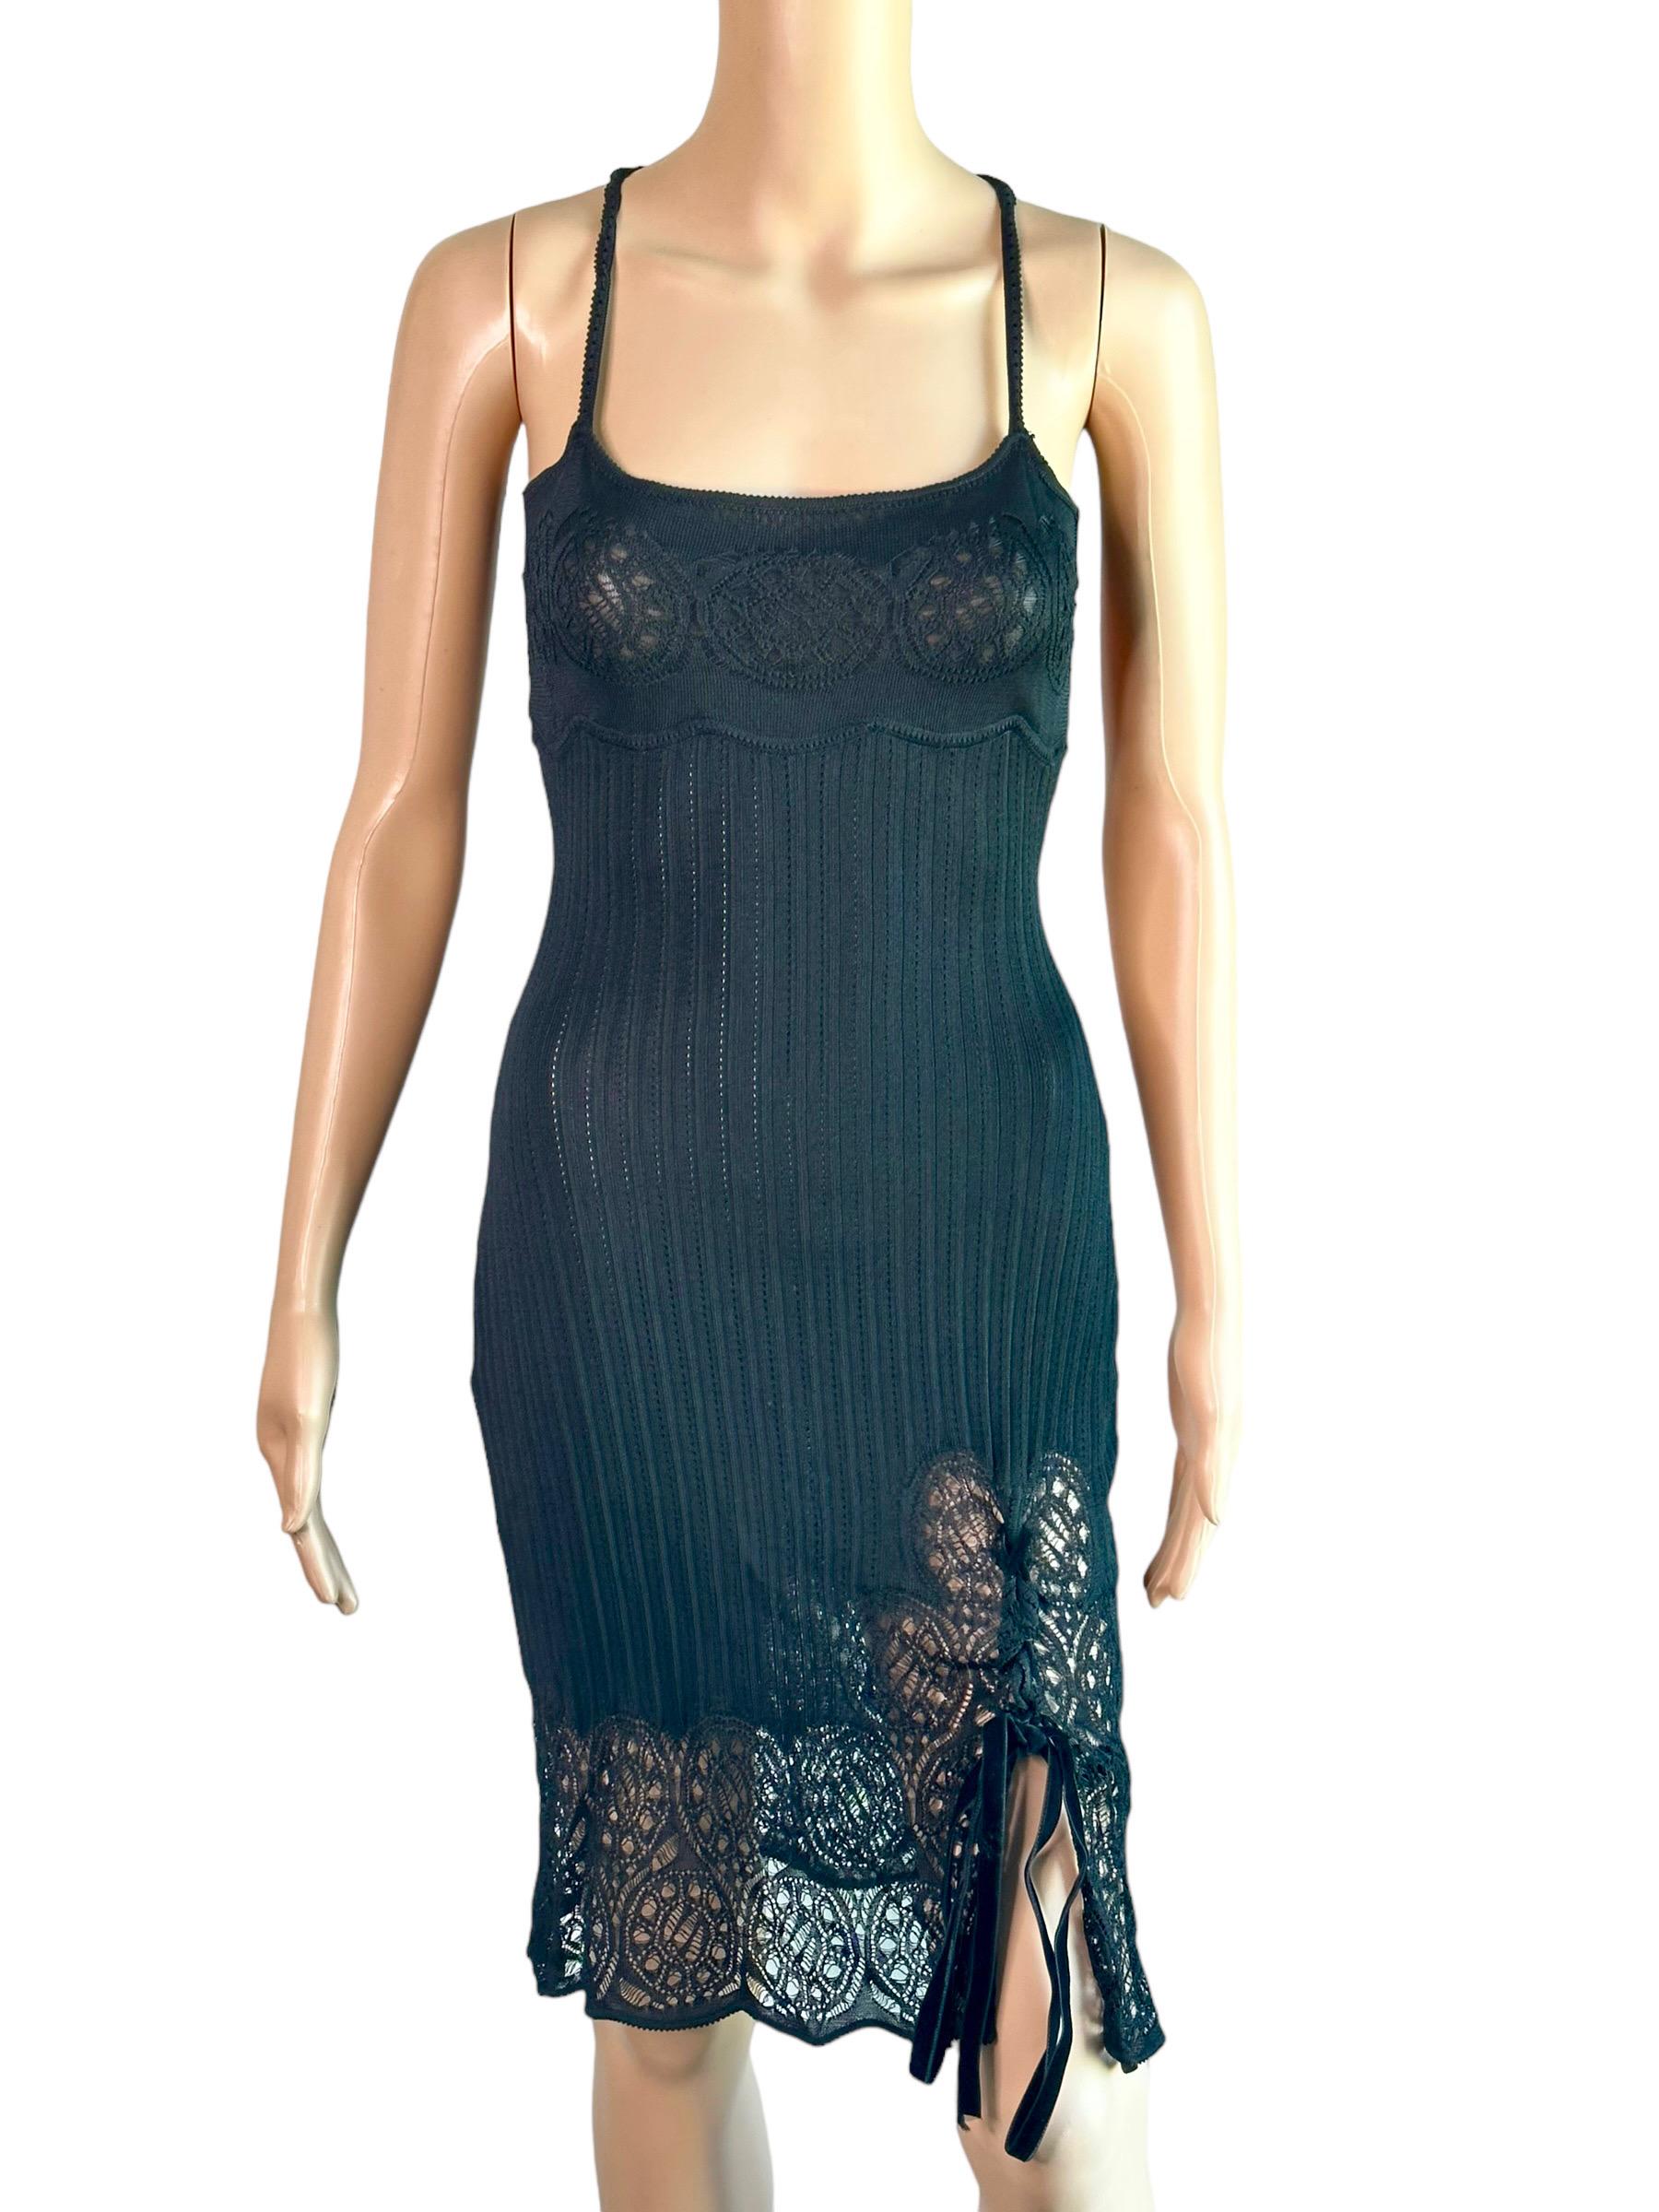 John Galliano S/S 1999 Sheer Lace Open Knit Black Mini Dress Size M

SUIVEZ-NOUS SUR INSTAGRAM @OPULENTADDICT